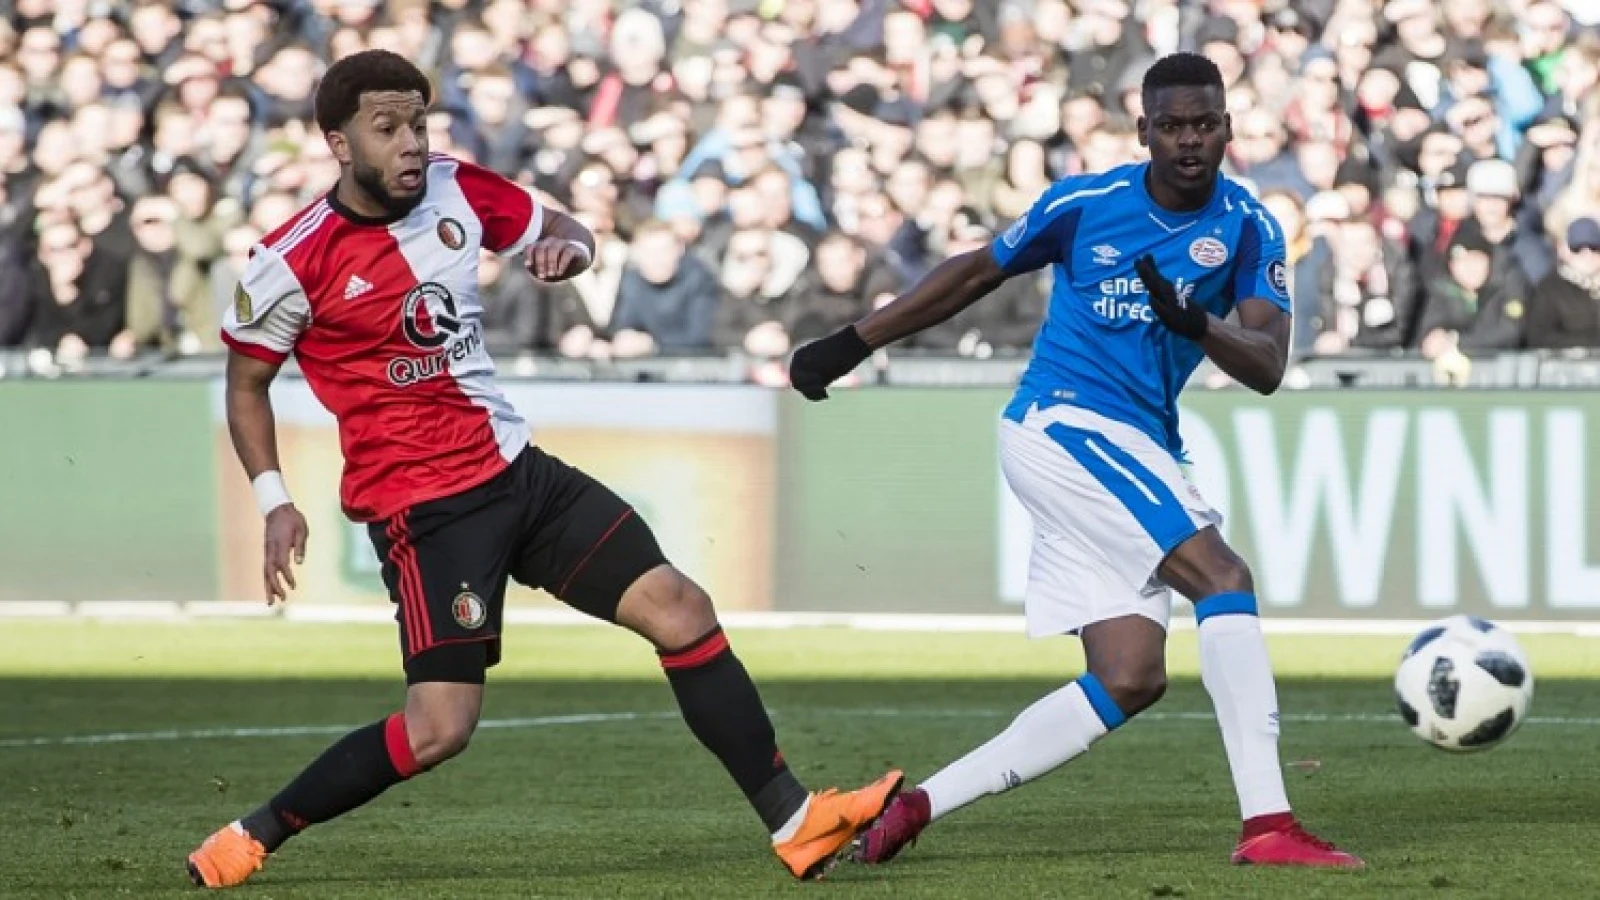 PSV'er herinnert zich ruzie met Feyenoordsupporter: 'Die supporter was niet blij'